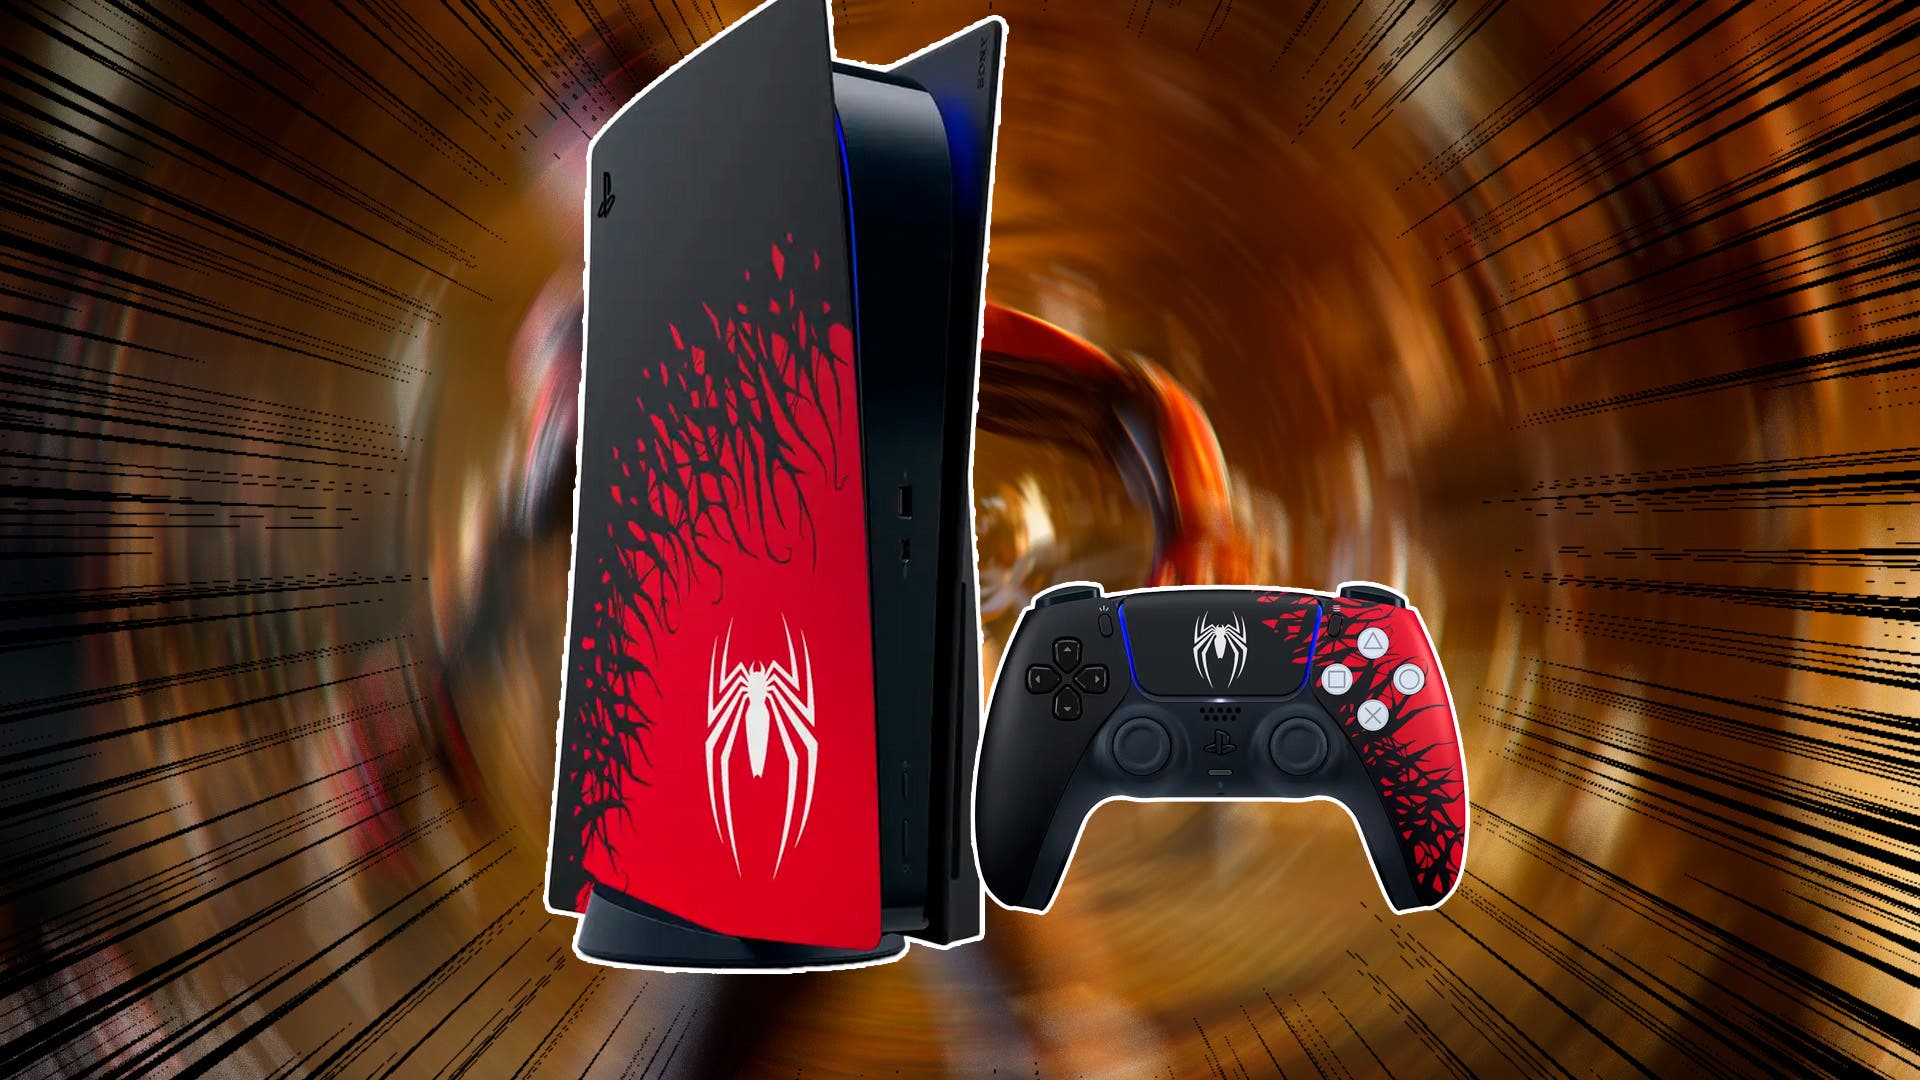 La Nueva PS5 Edición Spiderman 2 - Toda la Información Preventa y